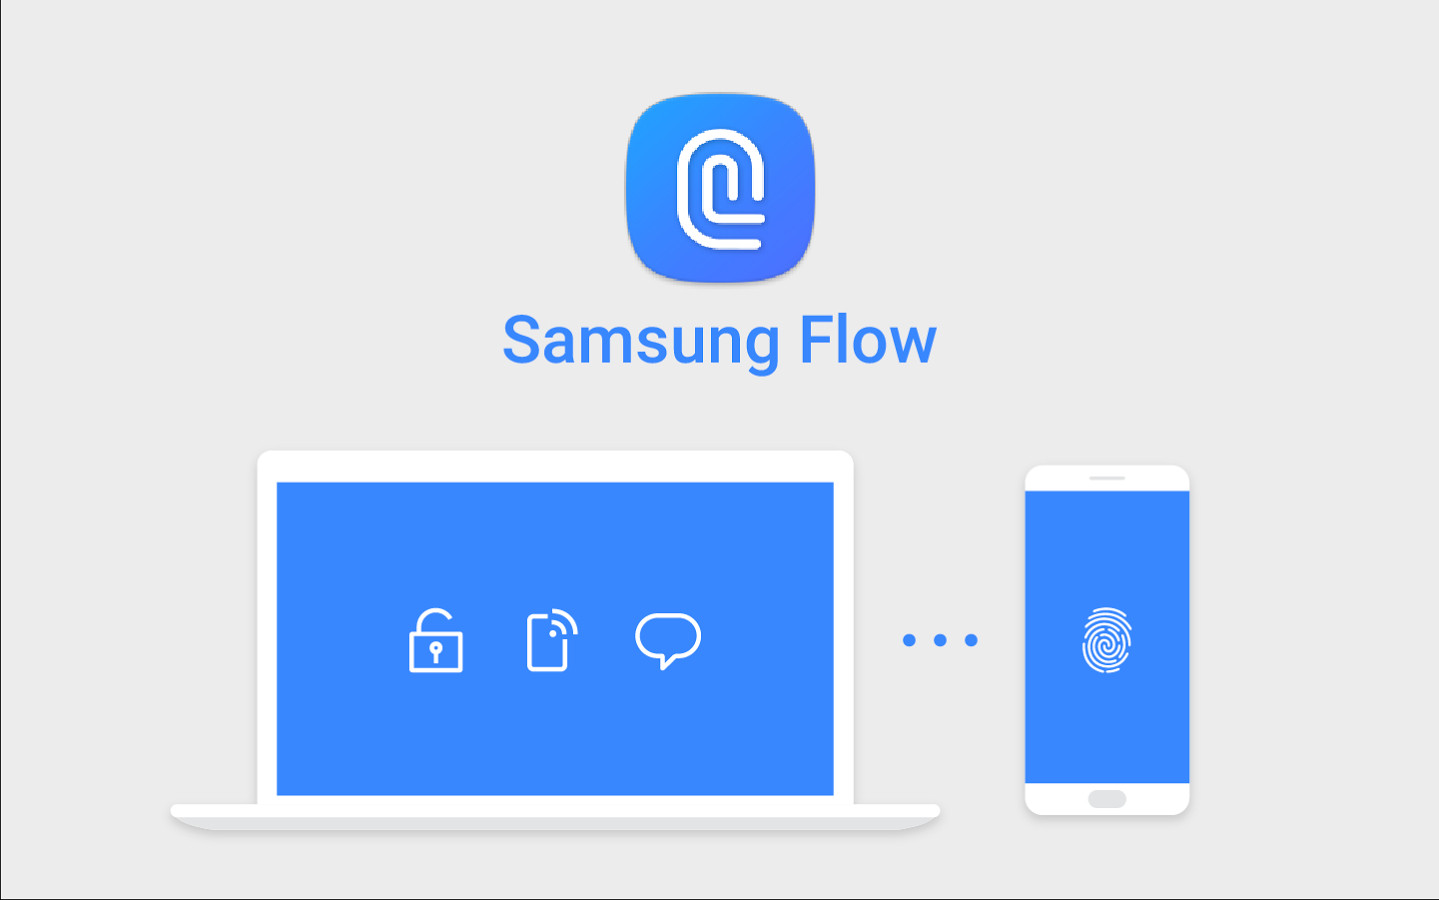 Samsung Flow Windows 10 ile birlikte çalışabilecek